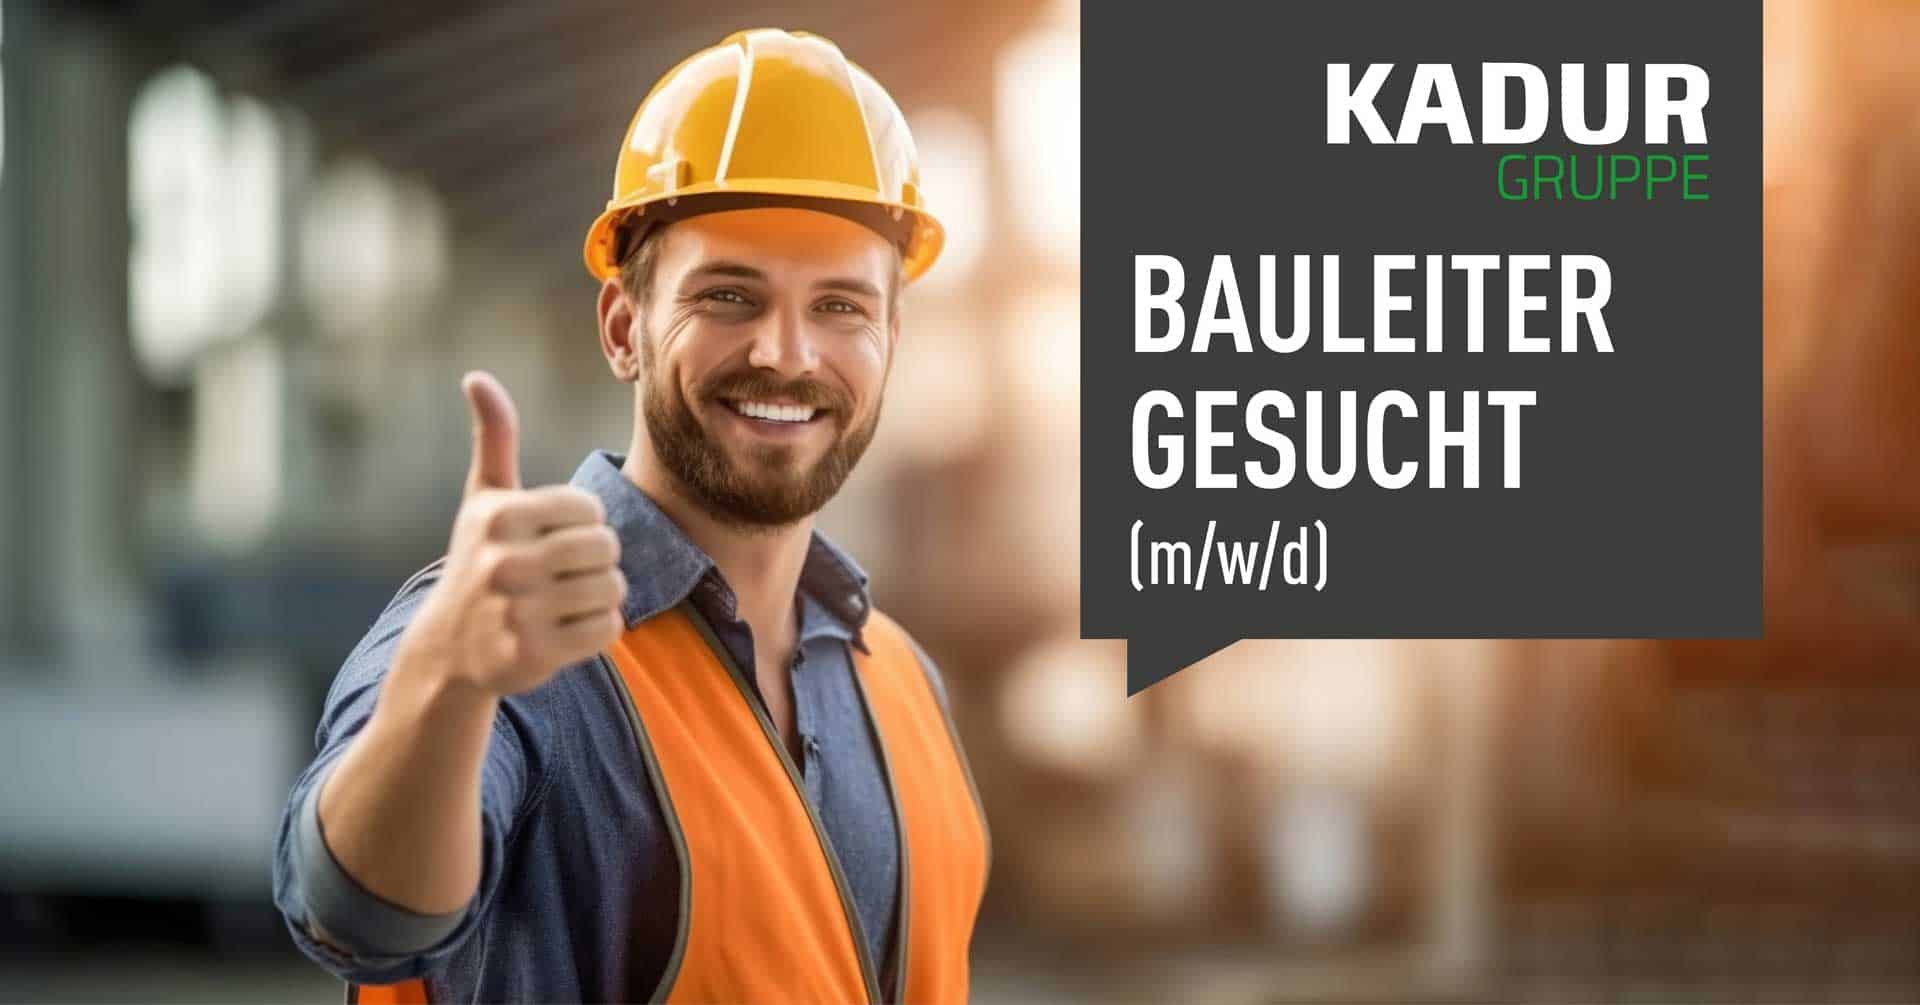 Job KADUR Gruppe Bauleiter (m/w/d) gesucht